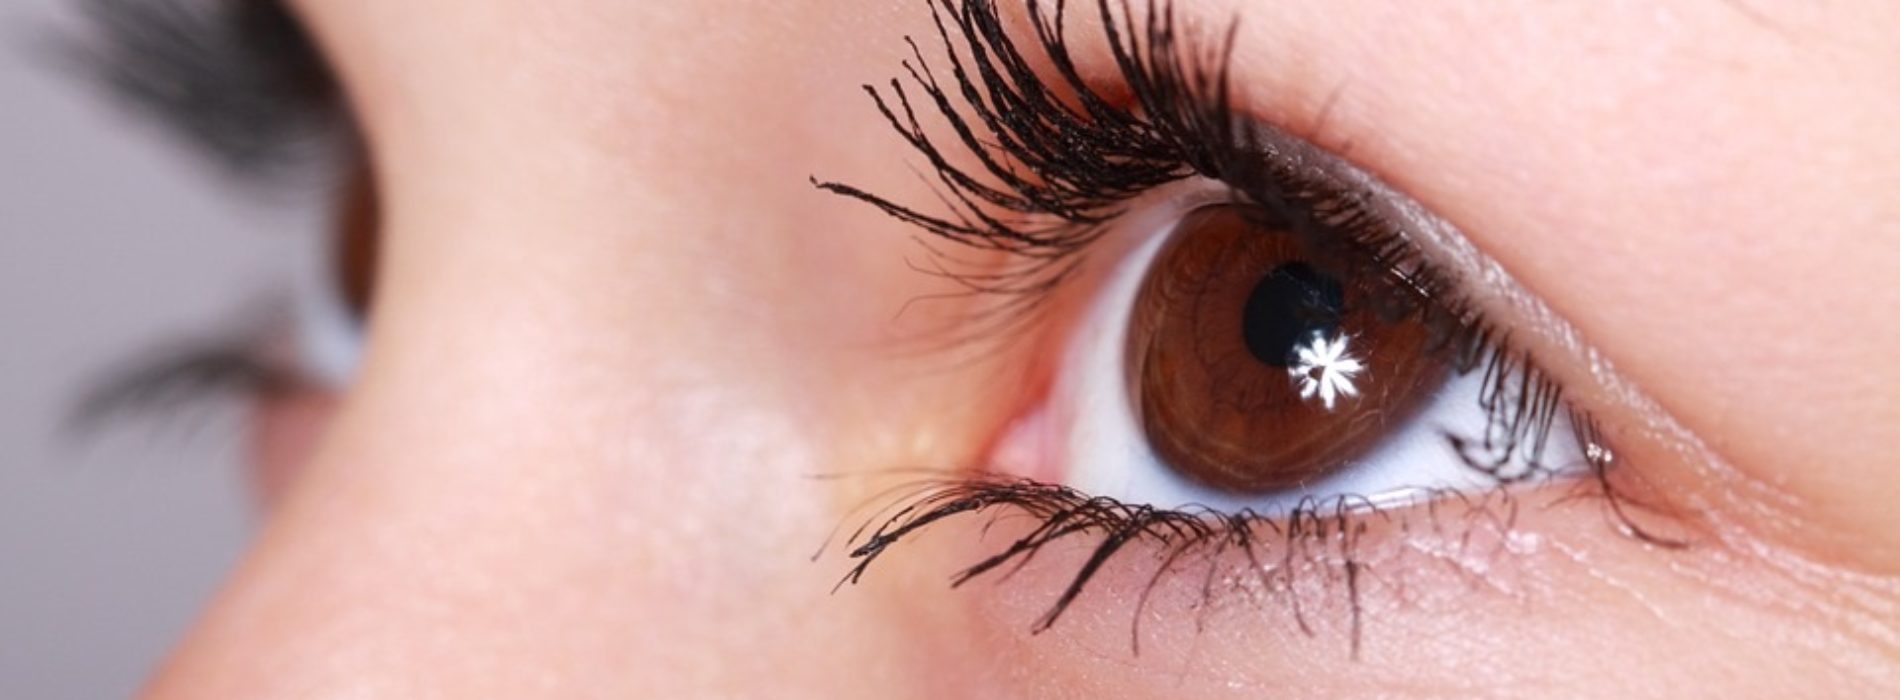 Kilka słów o tym, jak dbać o wzrok i zdrowie oczu